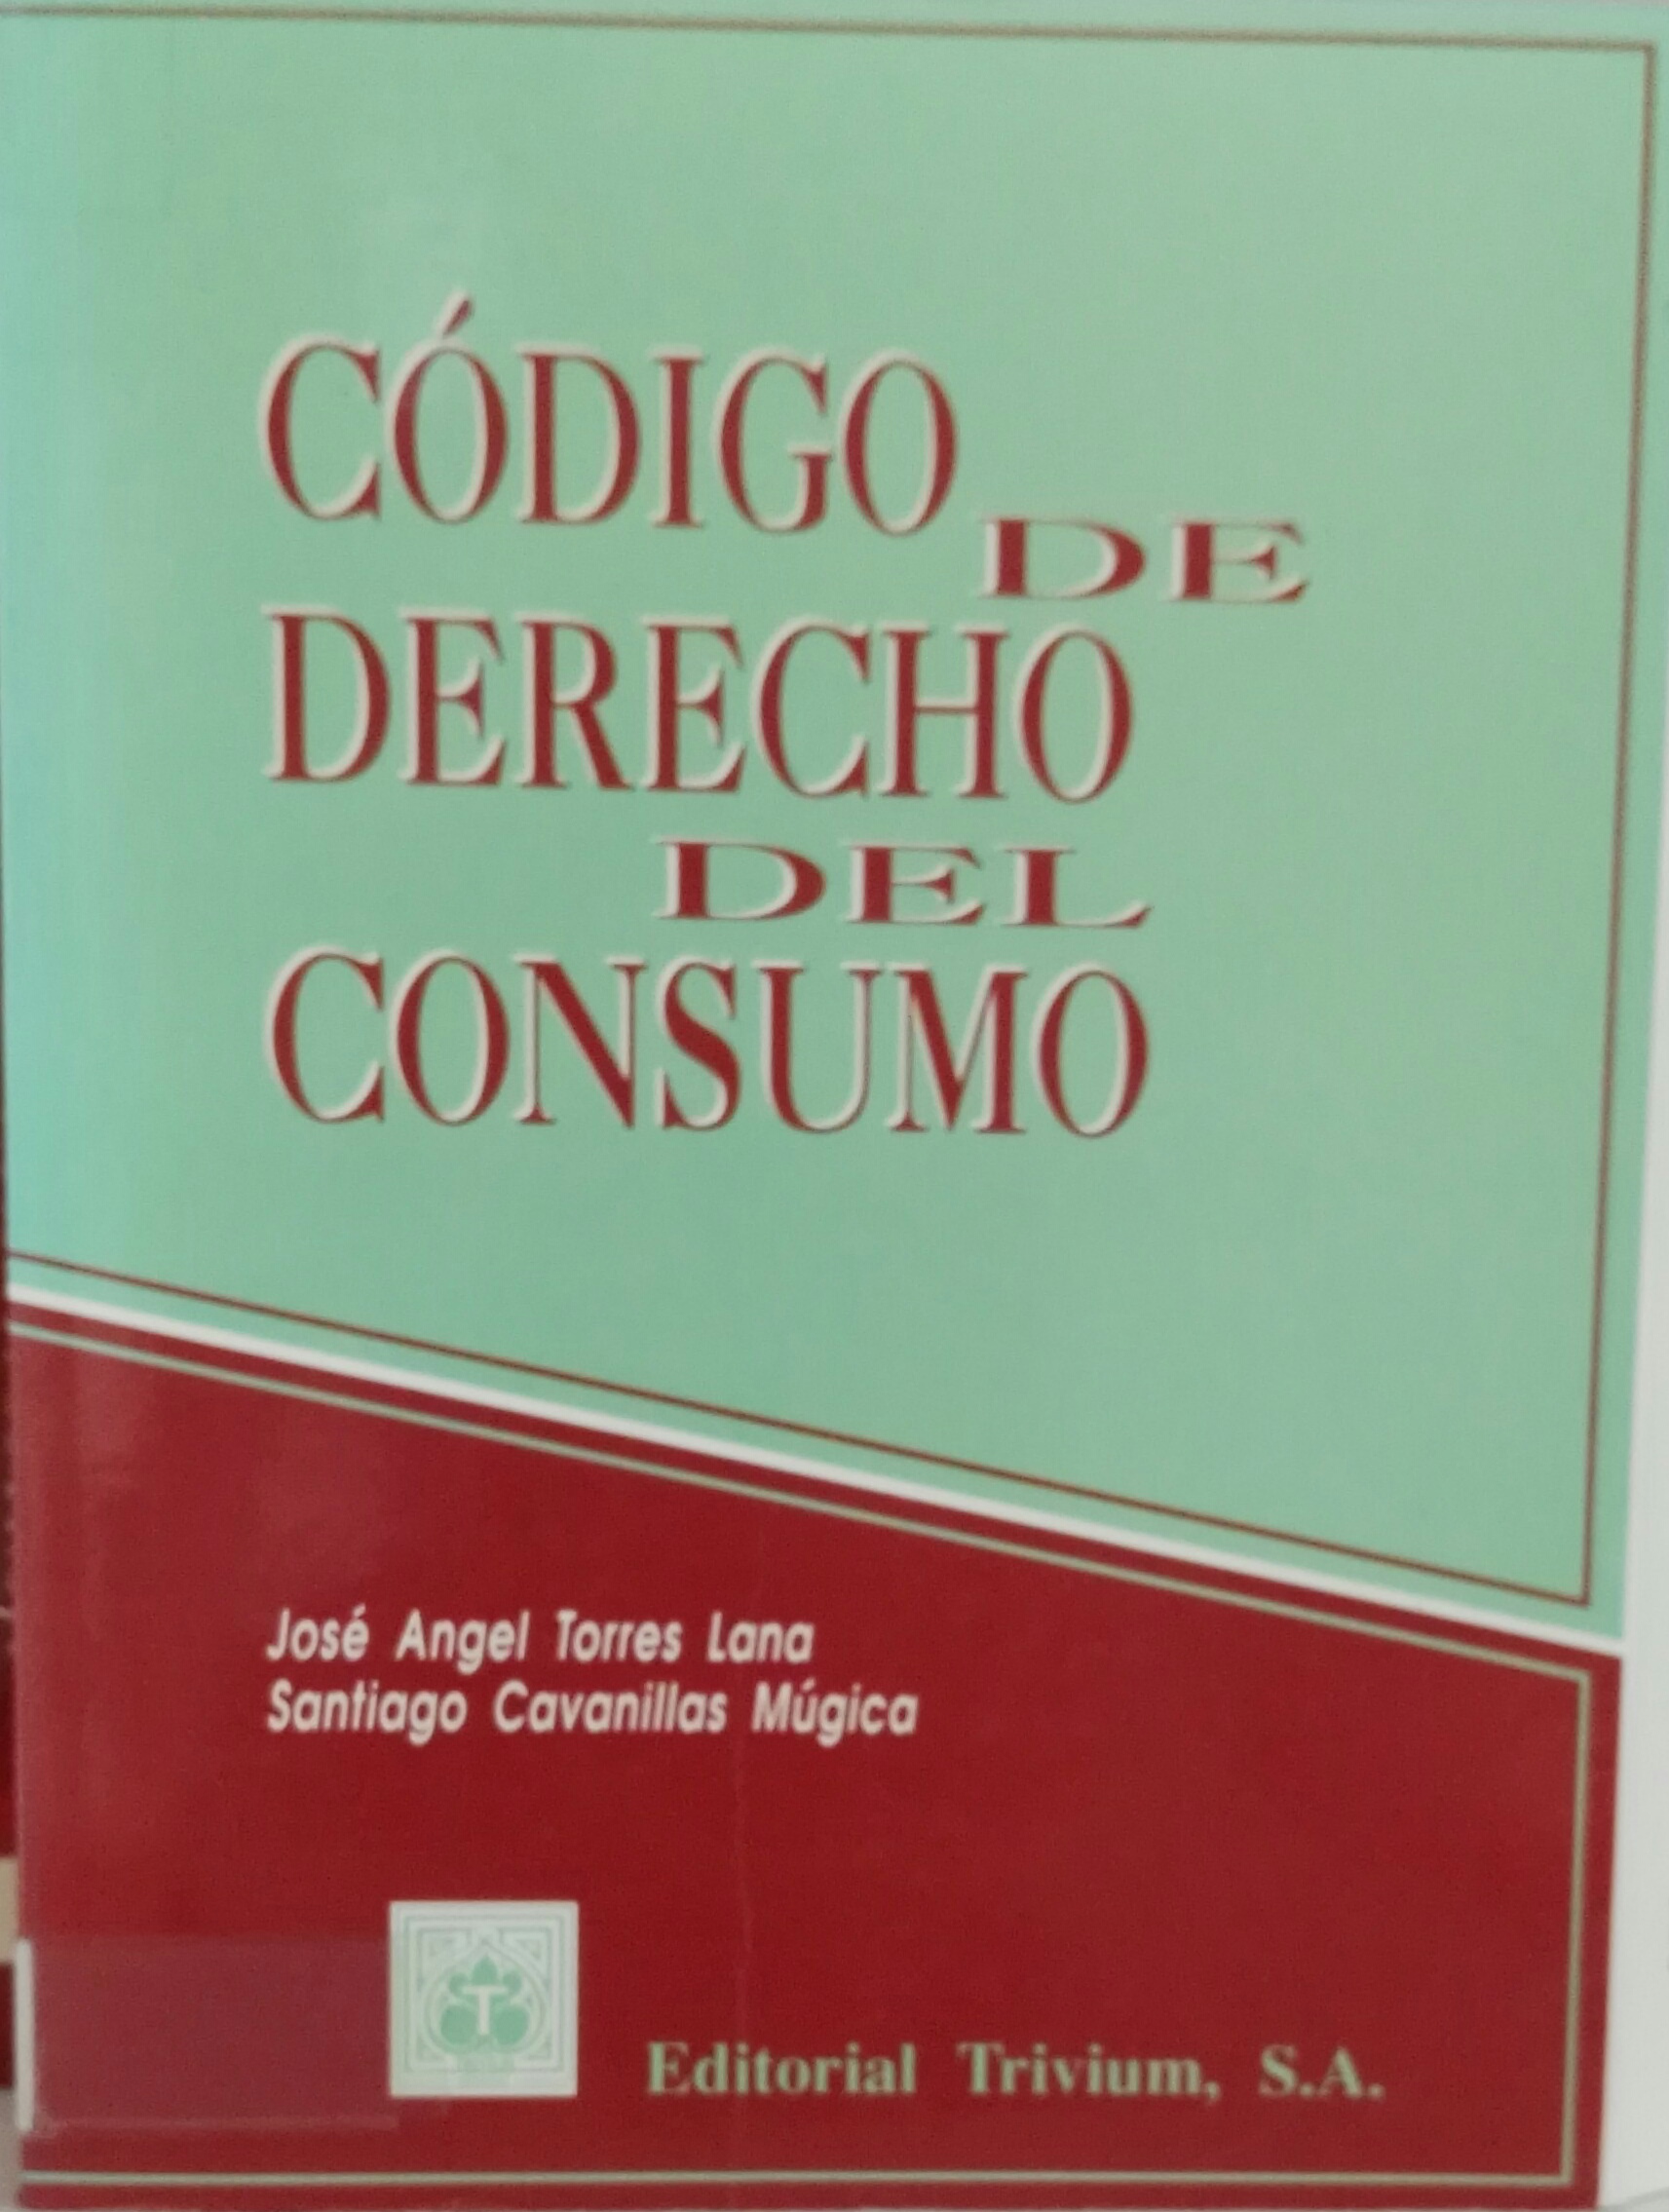 Imagen de portada del libro Código de derecho del consumo